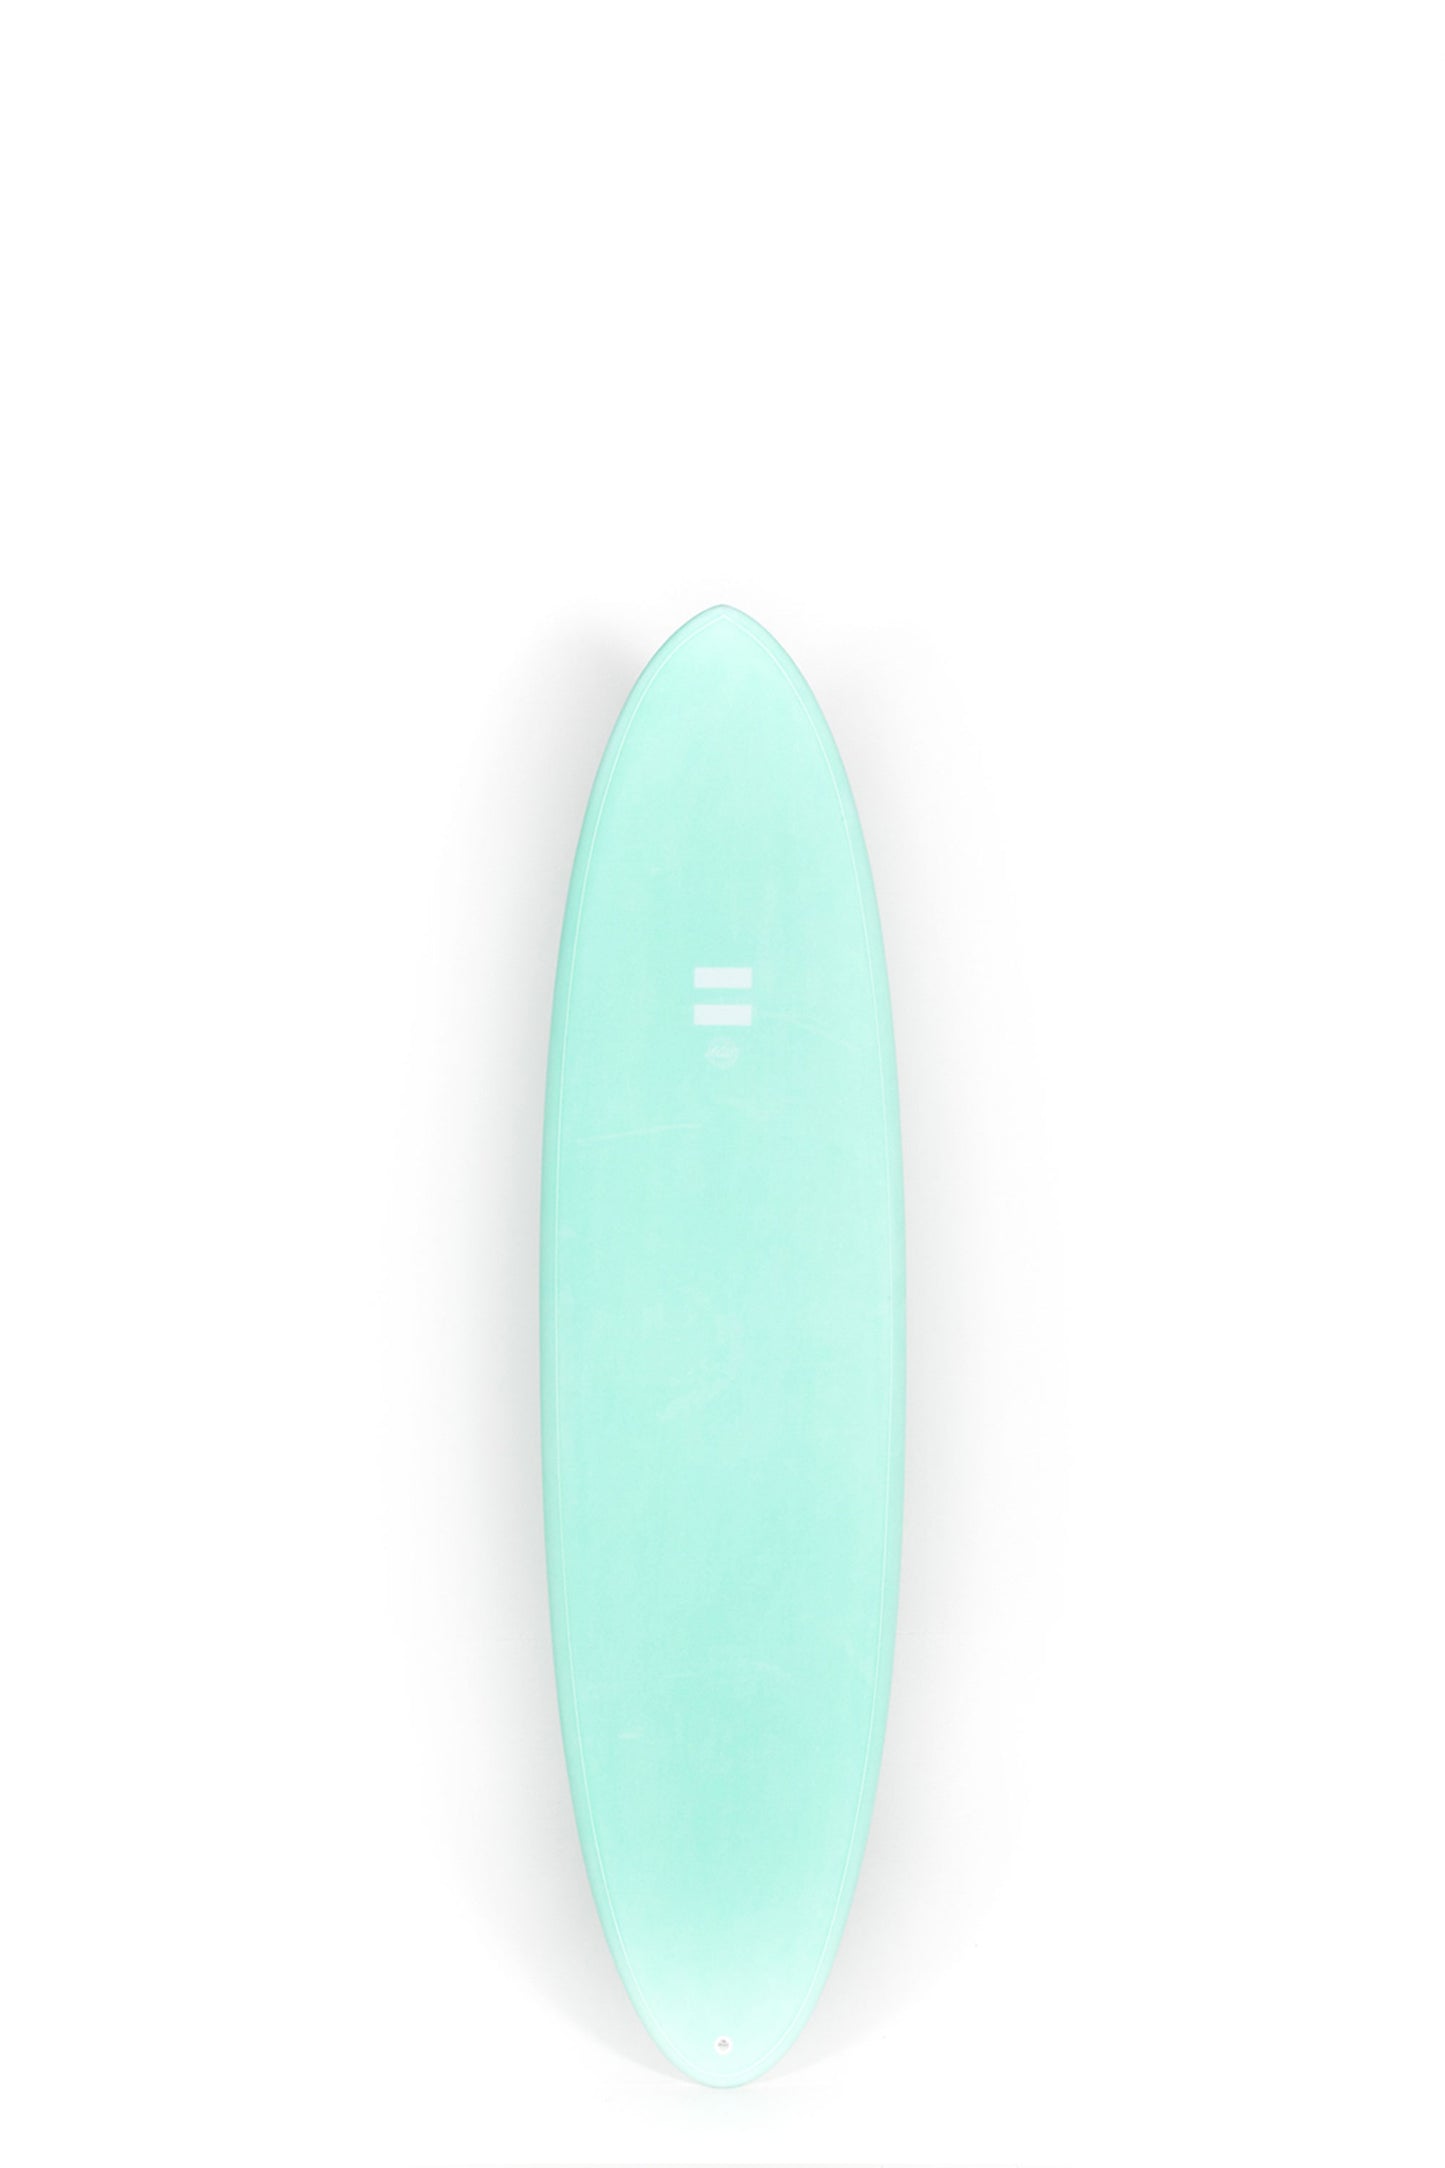 Pukas Surf Shop - Indio Endurance - THE EGG Aqua Mint - 6´8 x 21 1/2 x 2 3/4 - 46L